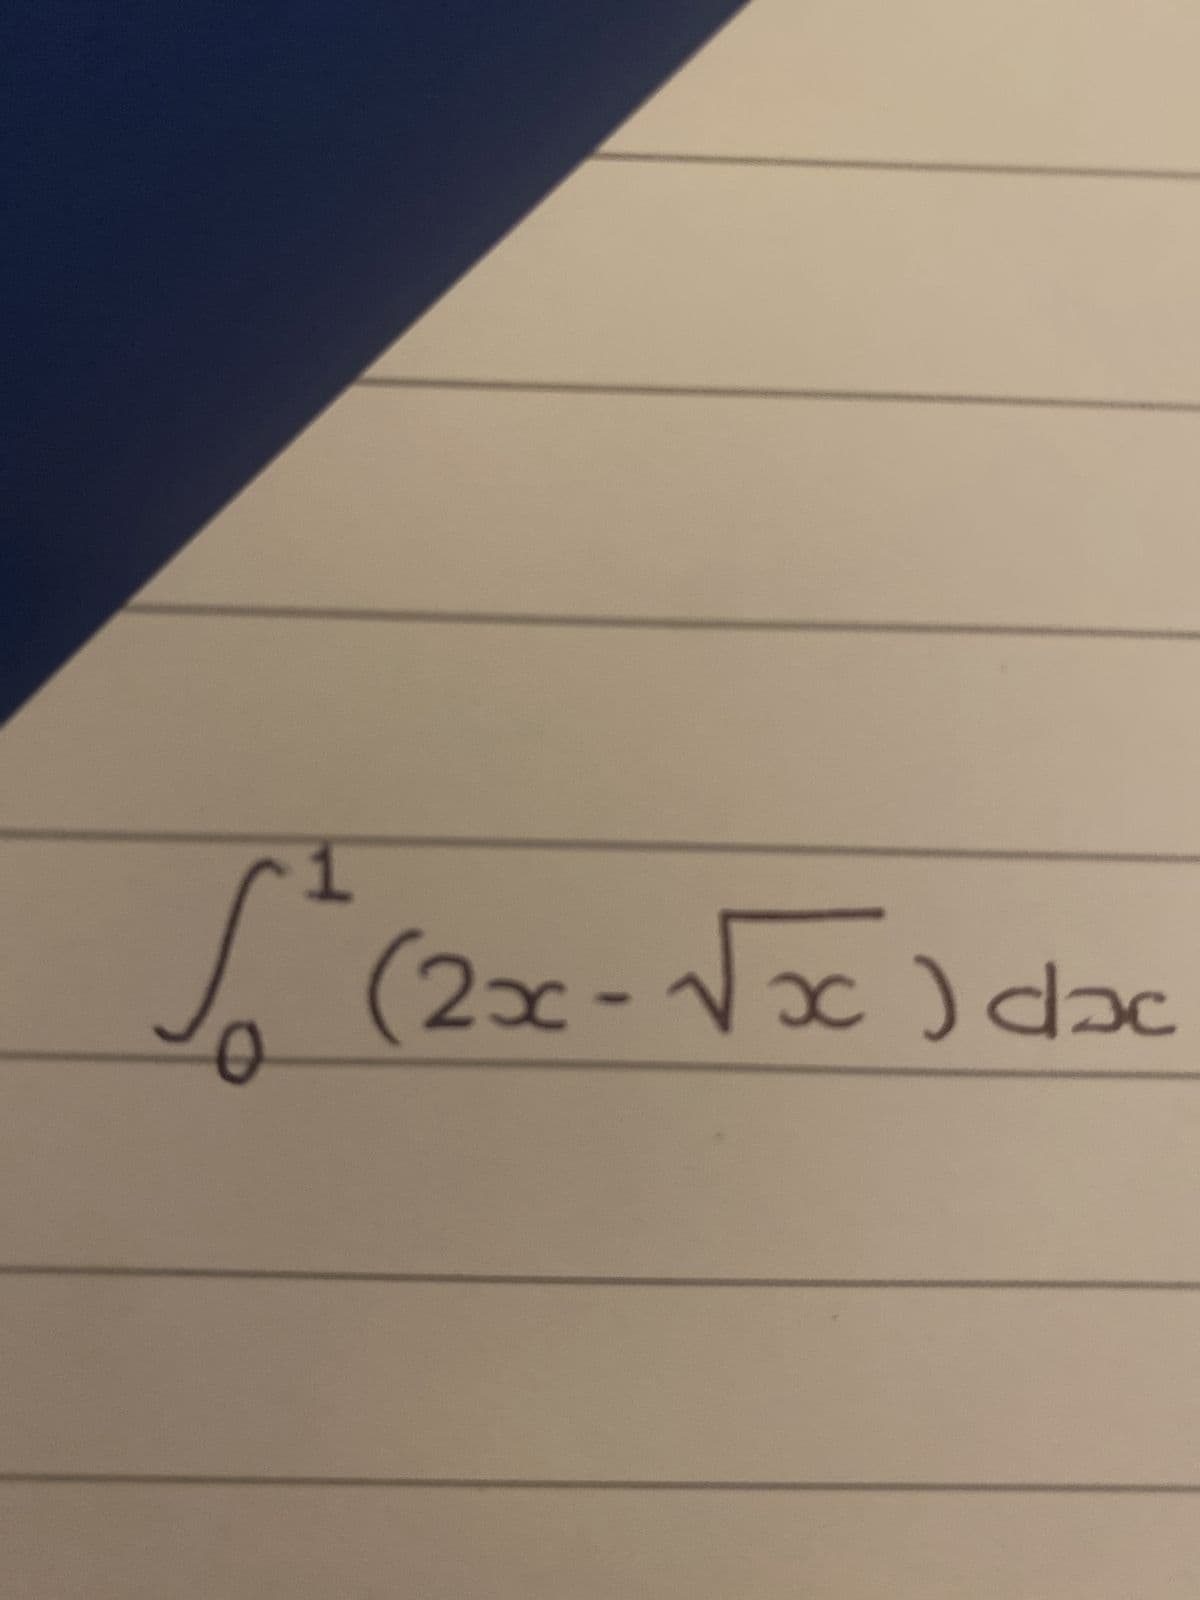 1
√² (2x - √√x) dxc